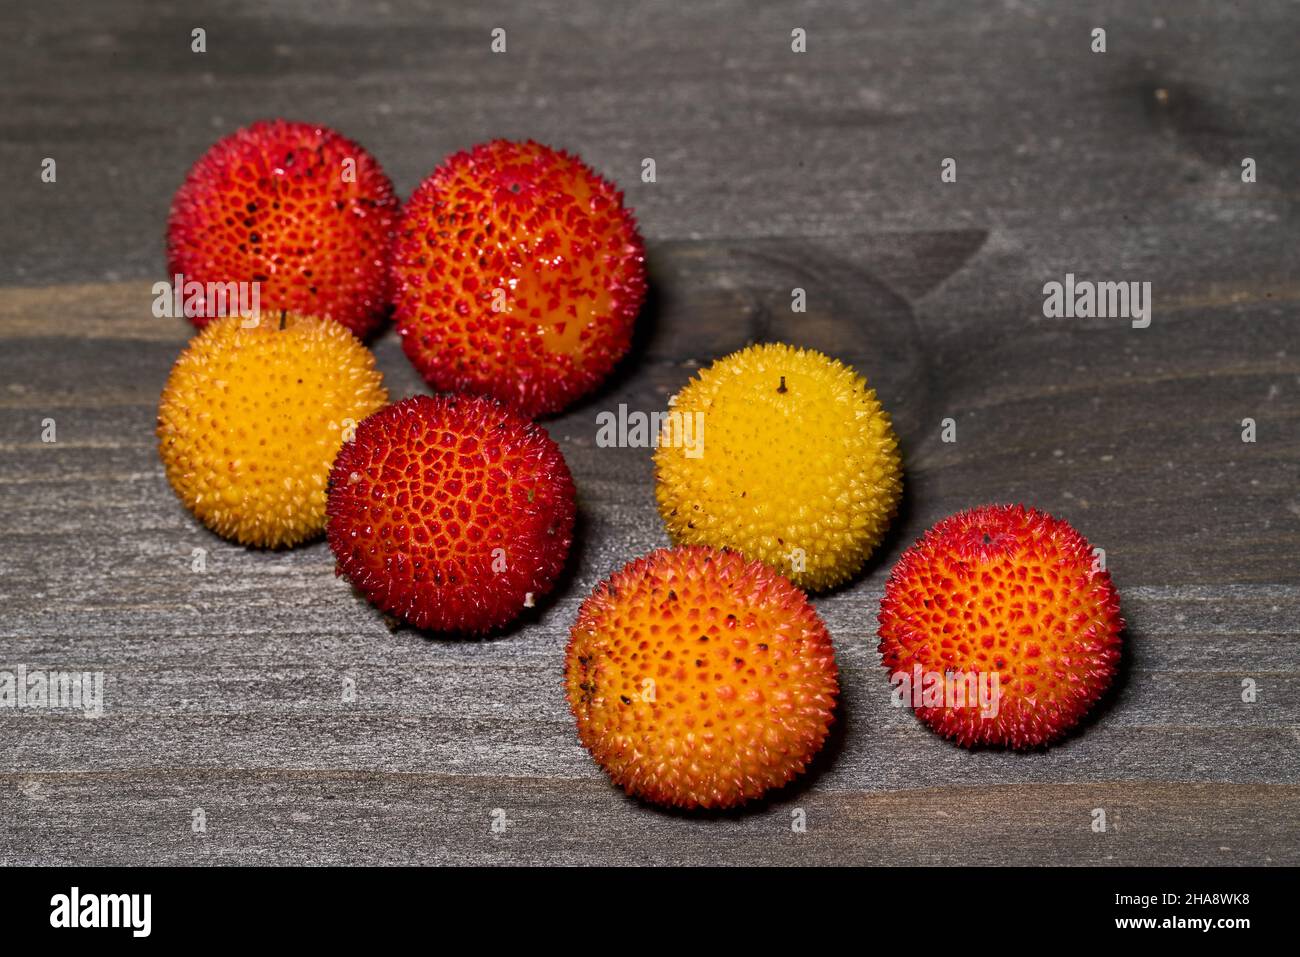 Frutti rossi e gialli maturi dell'Arbutus unedo alla fine dell'autunno Foto  stock - Alamy